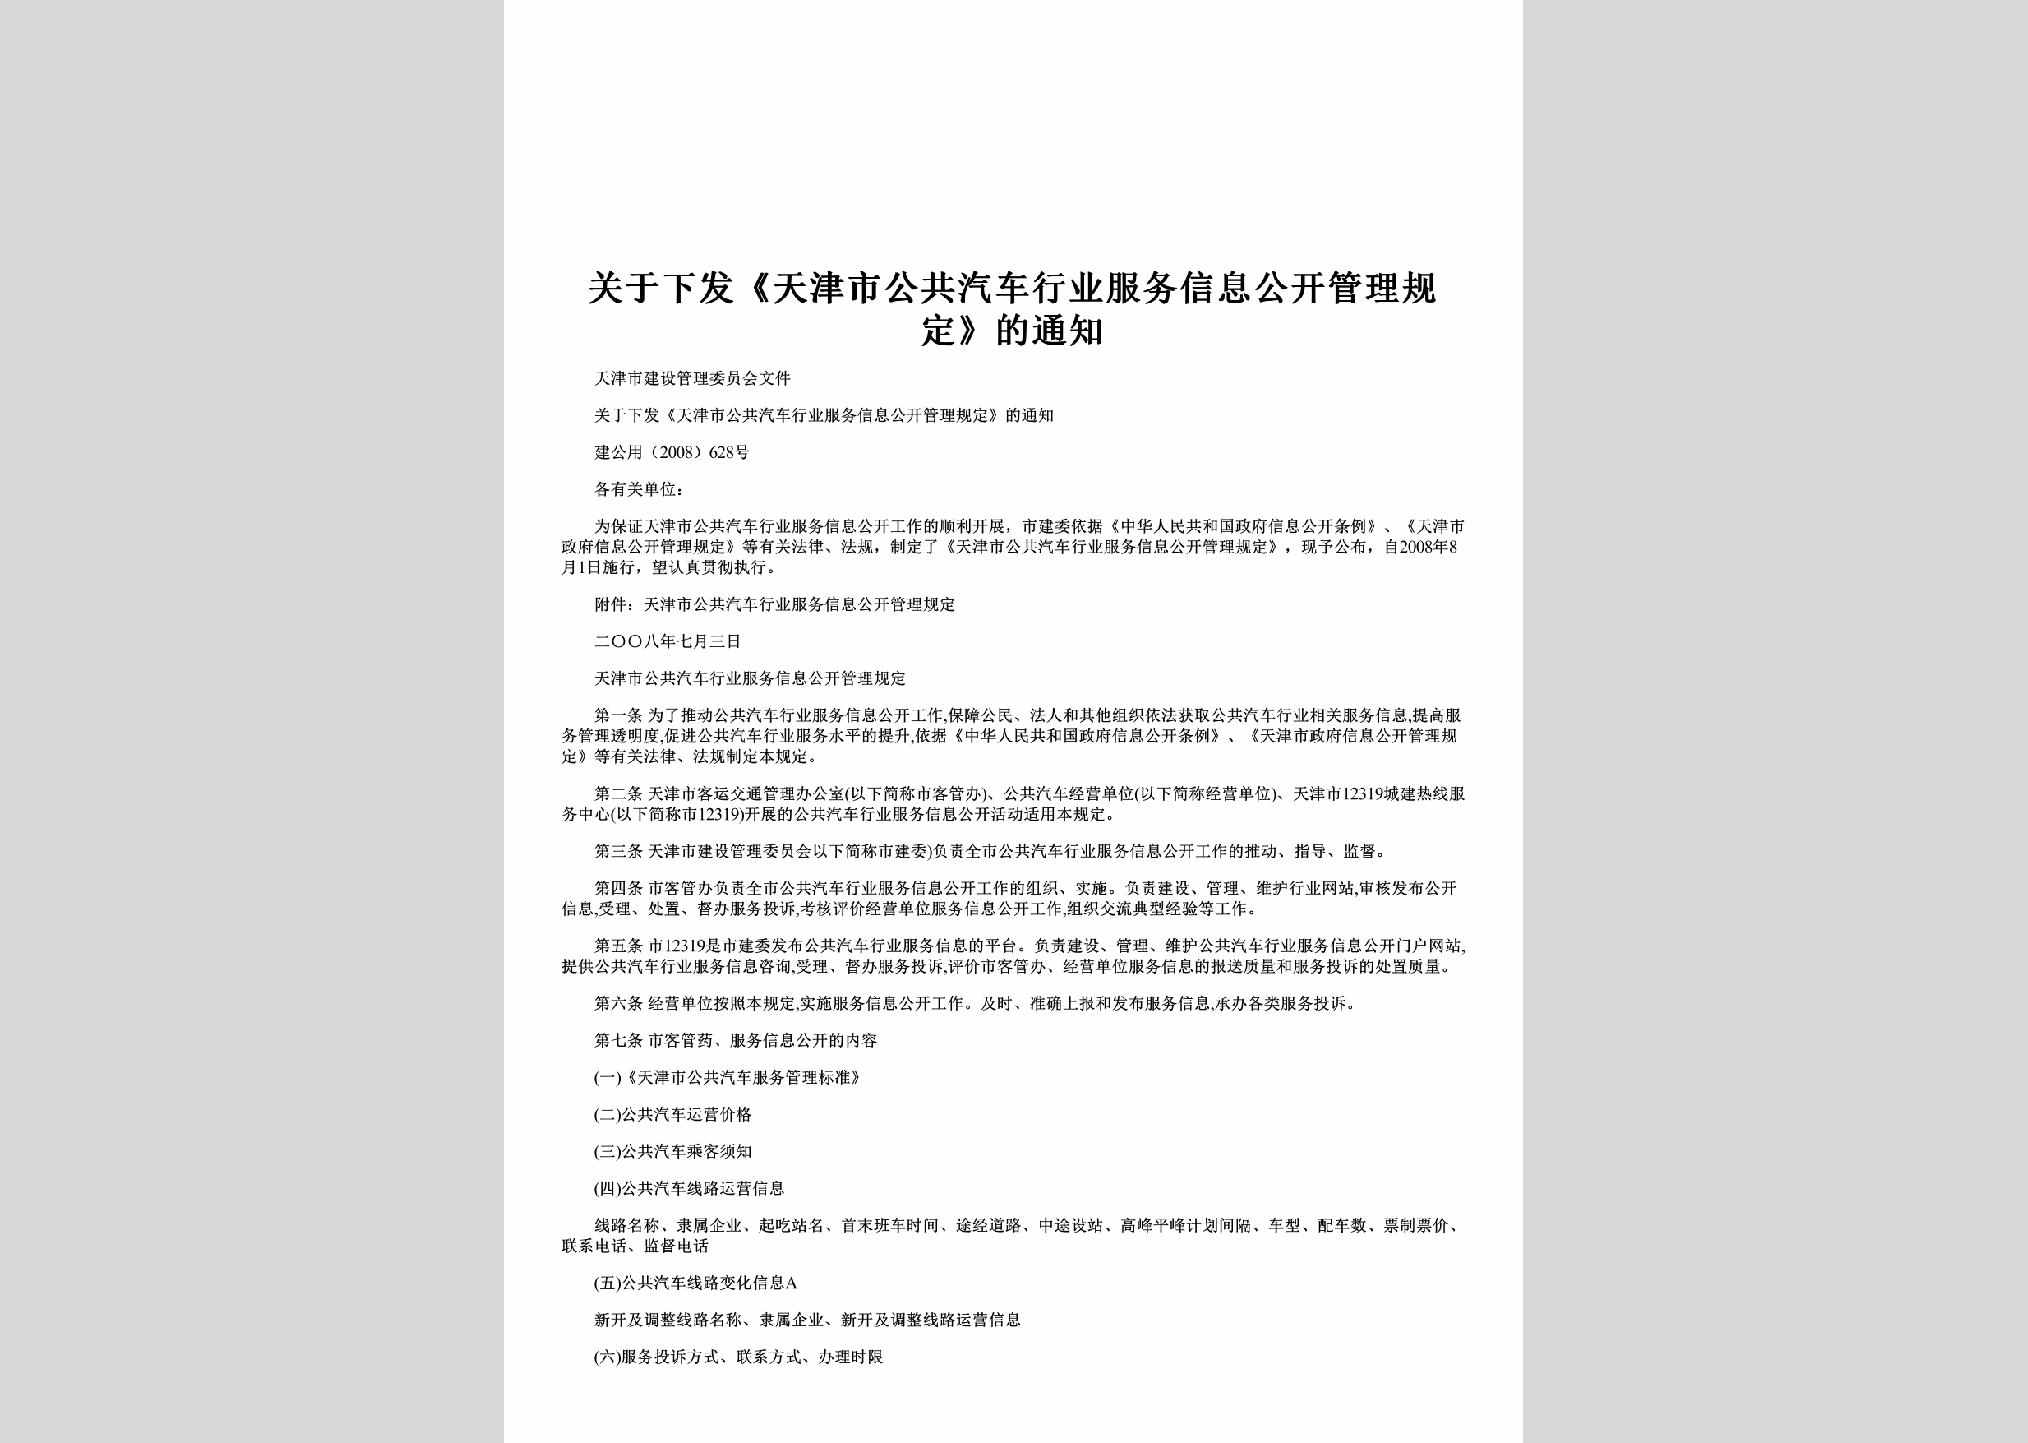 建公用[2008]628号：关于下发《天津市公共汽车行业服务信息公开管理规定》的通知